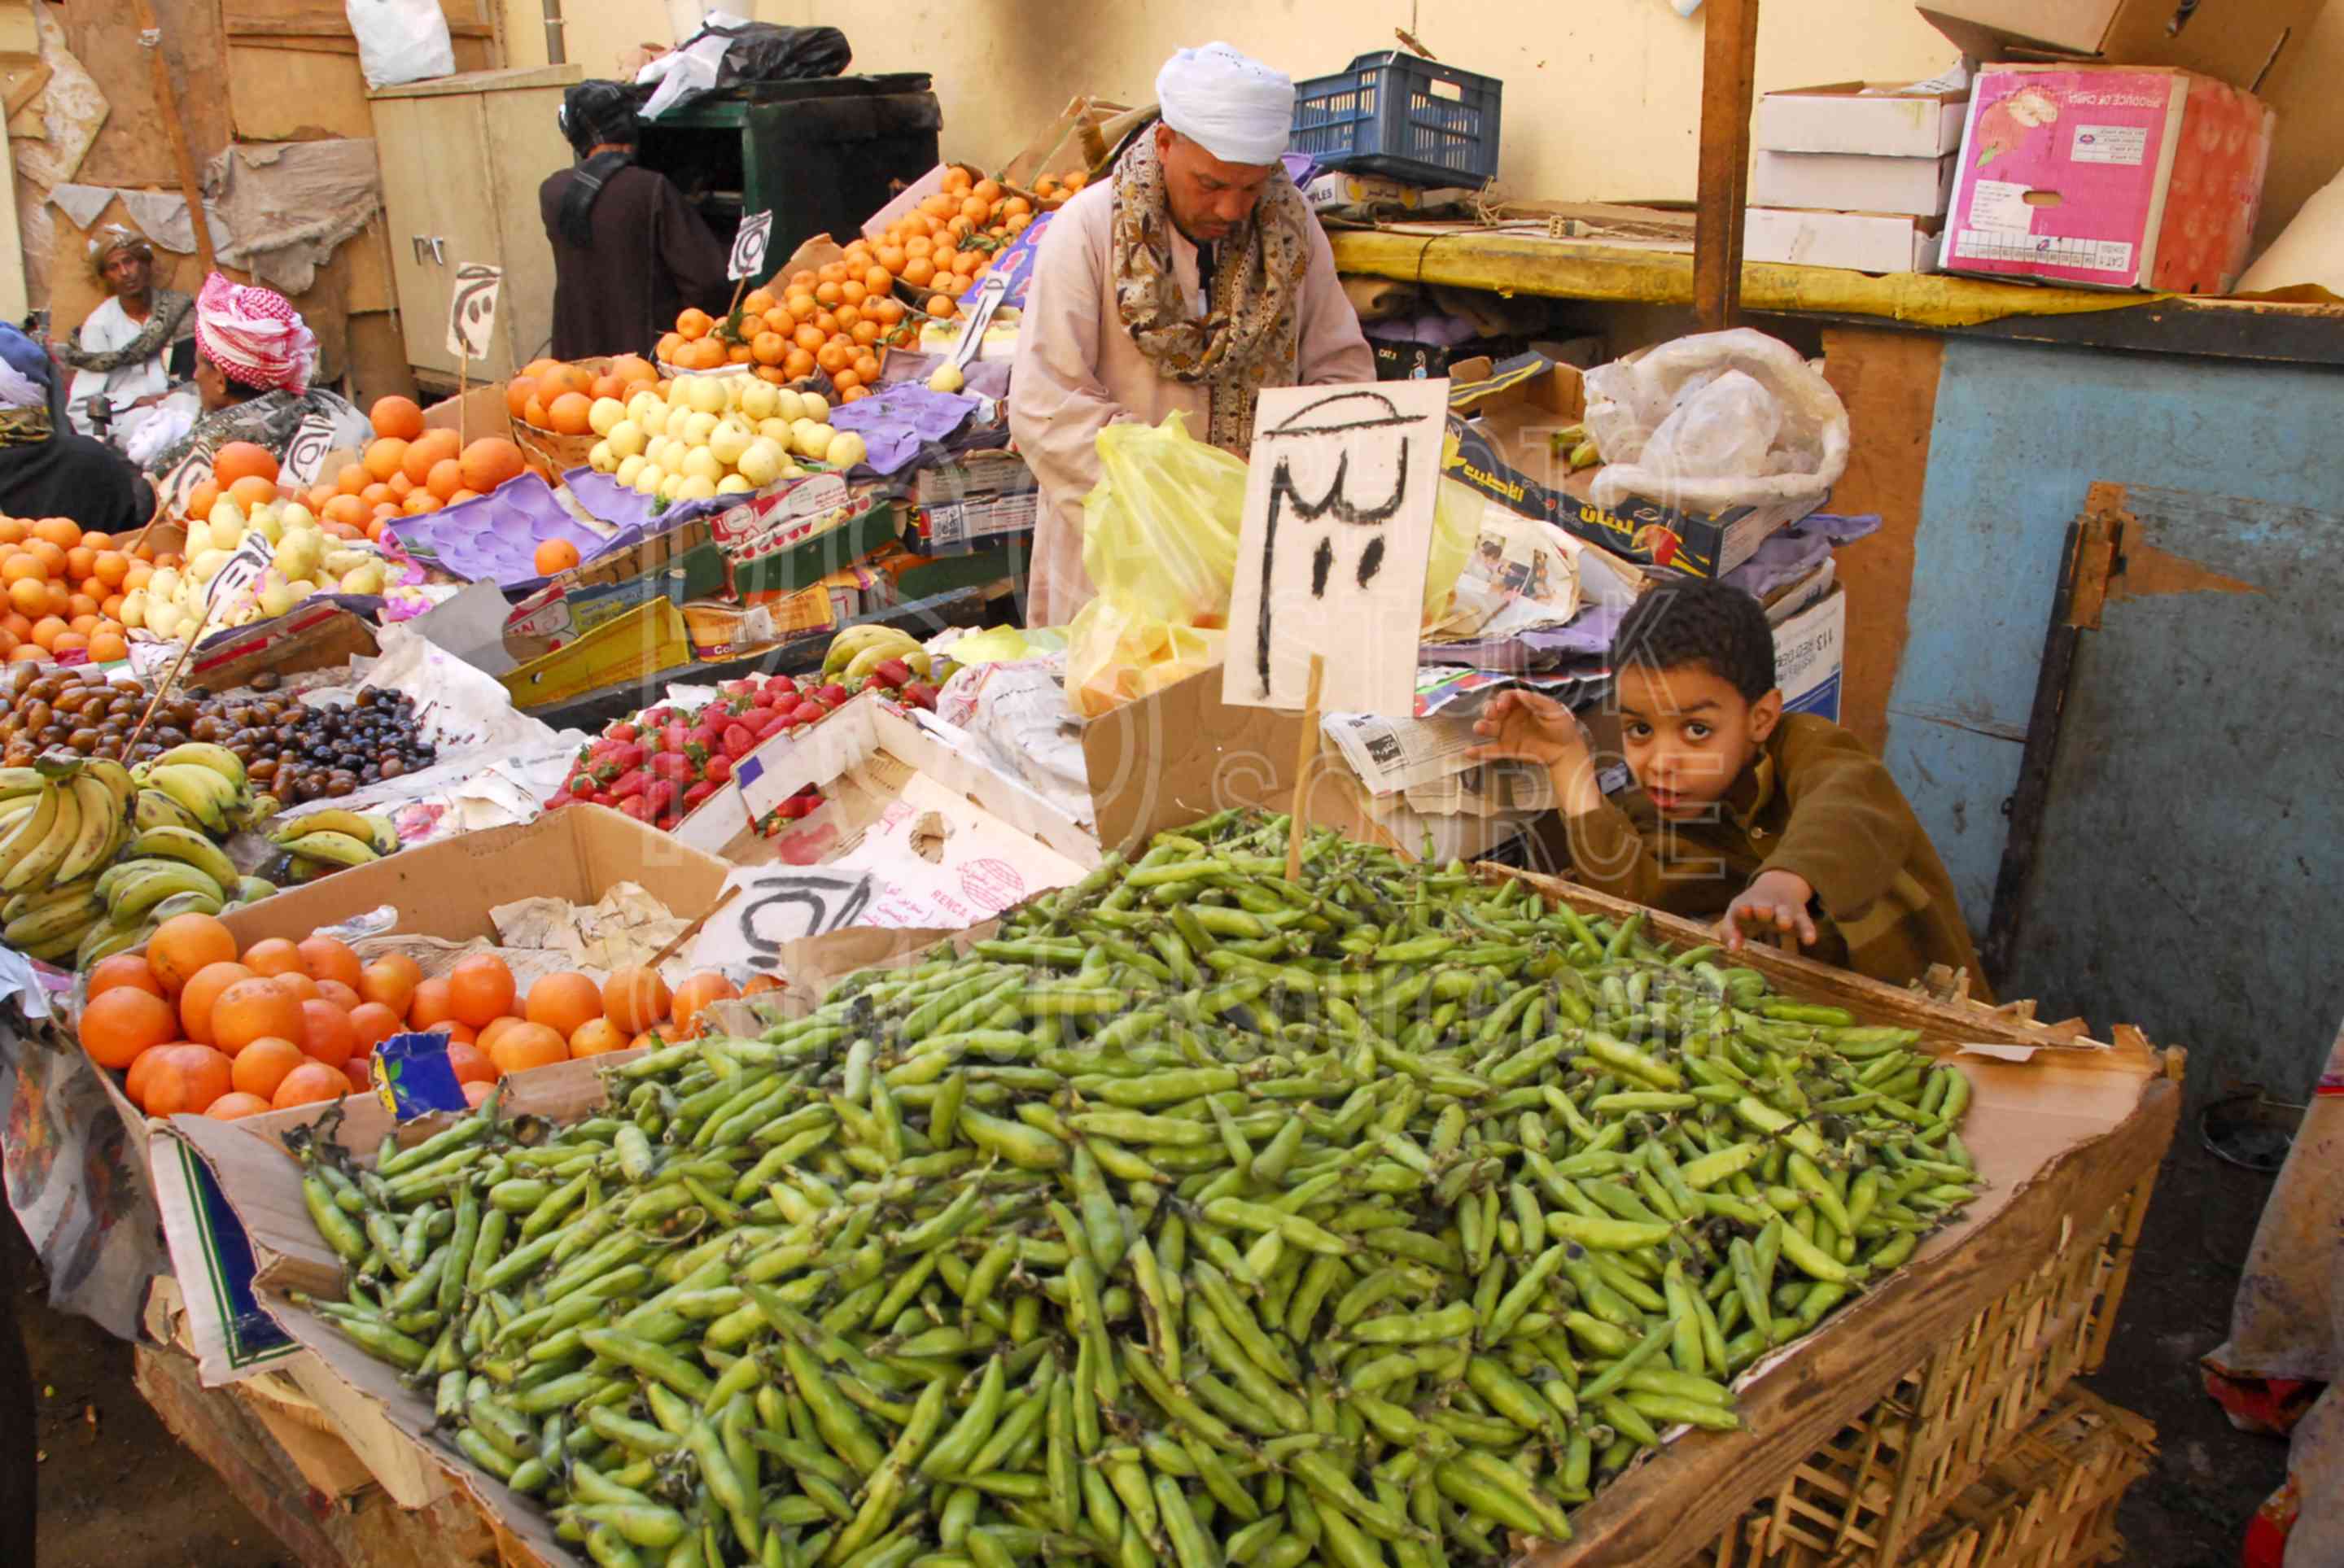 Vegetables for Sale,market,people,produce,vegetables,fruit,shop,shopping,selling,vendors,food,markets